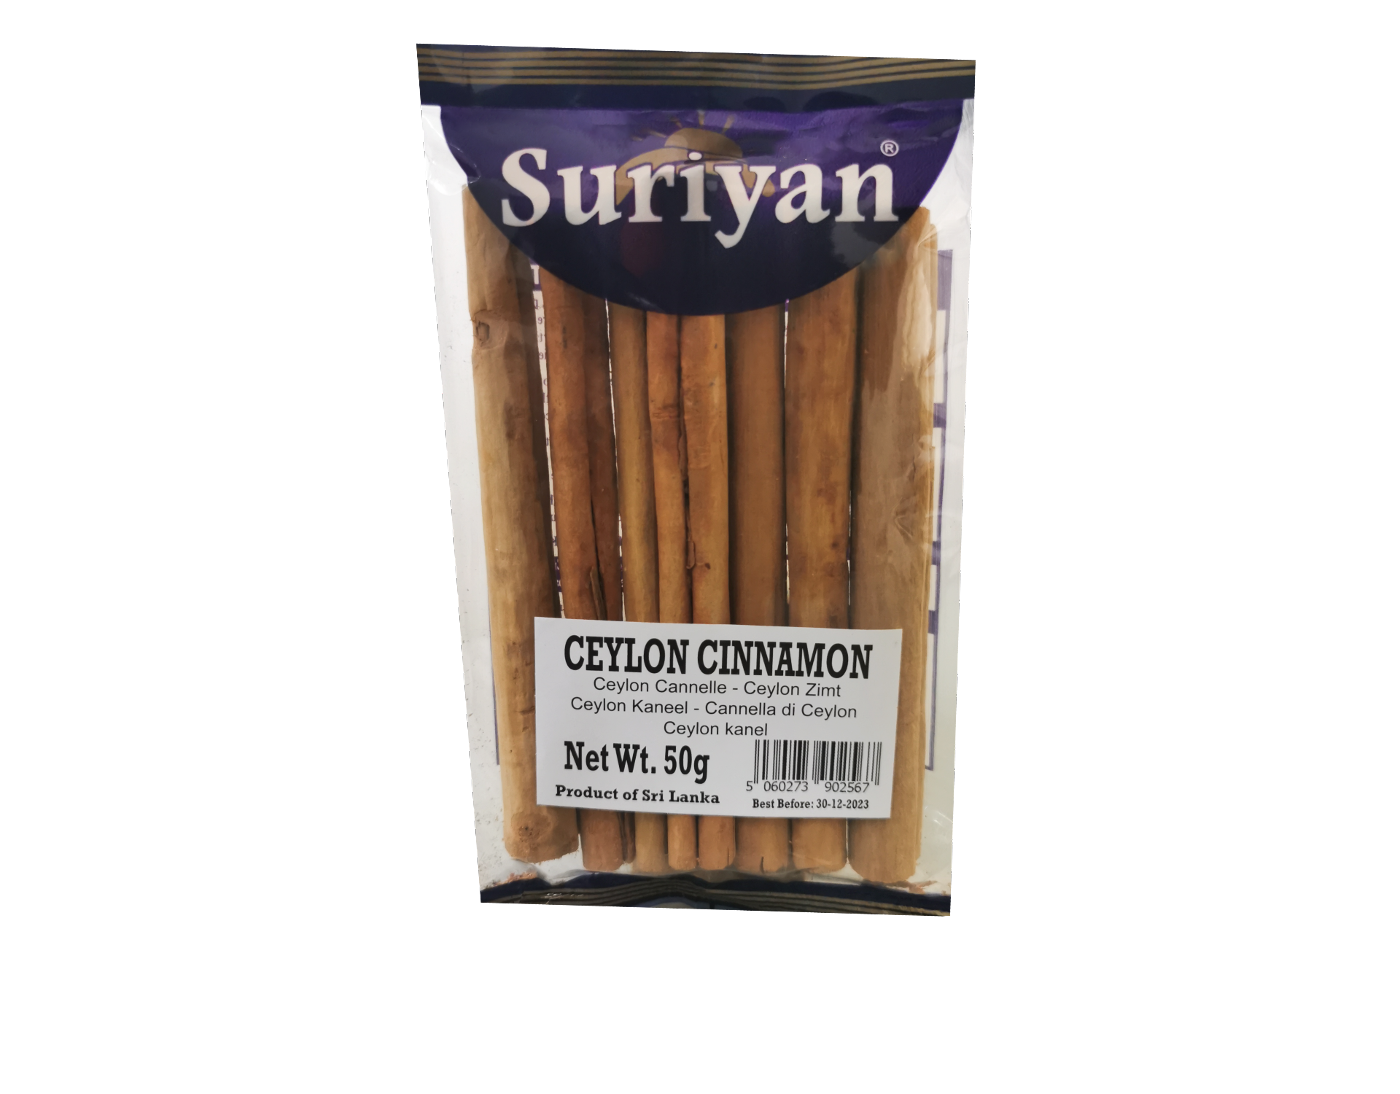 Suriyan Ceylon Cinnamon Sticks